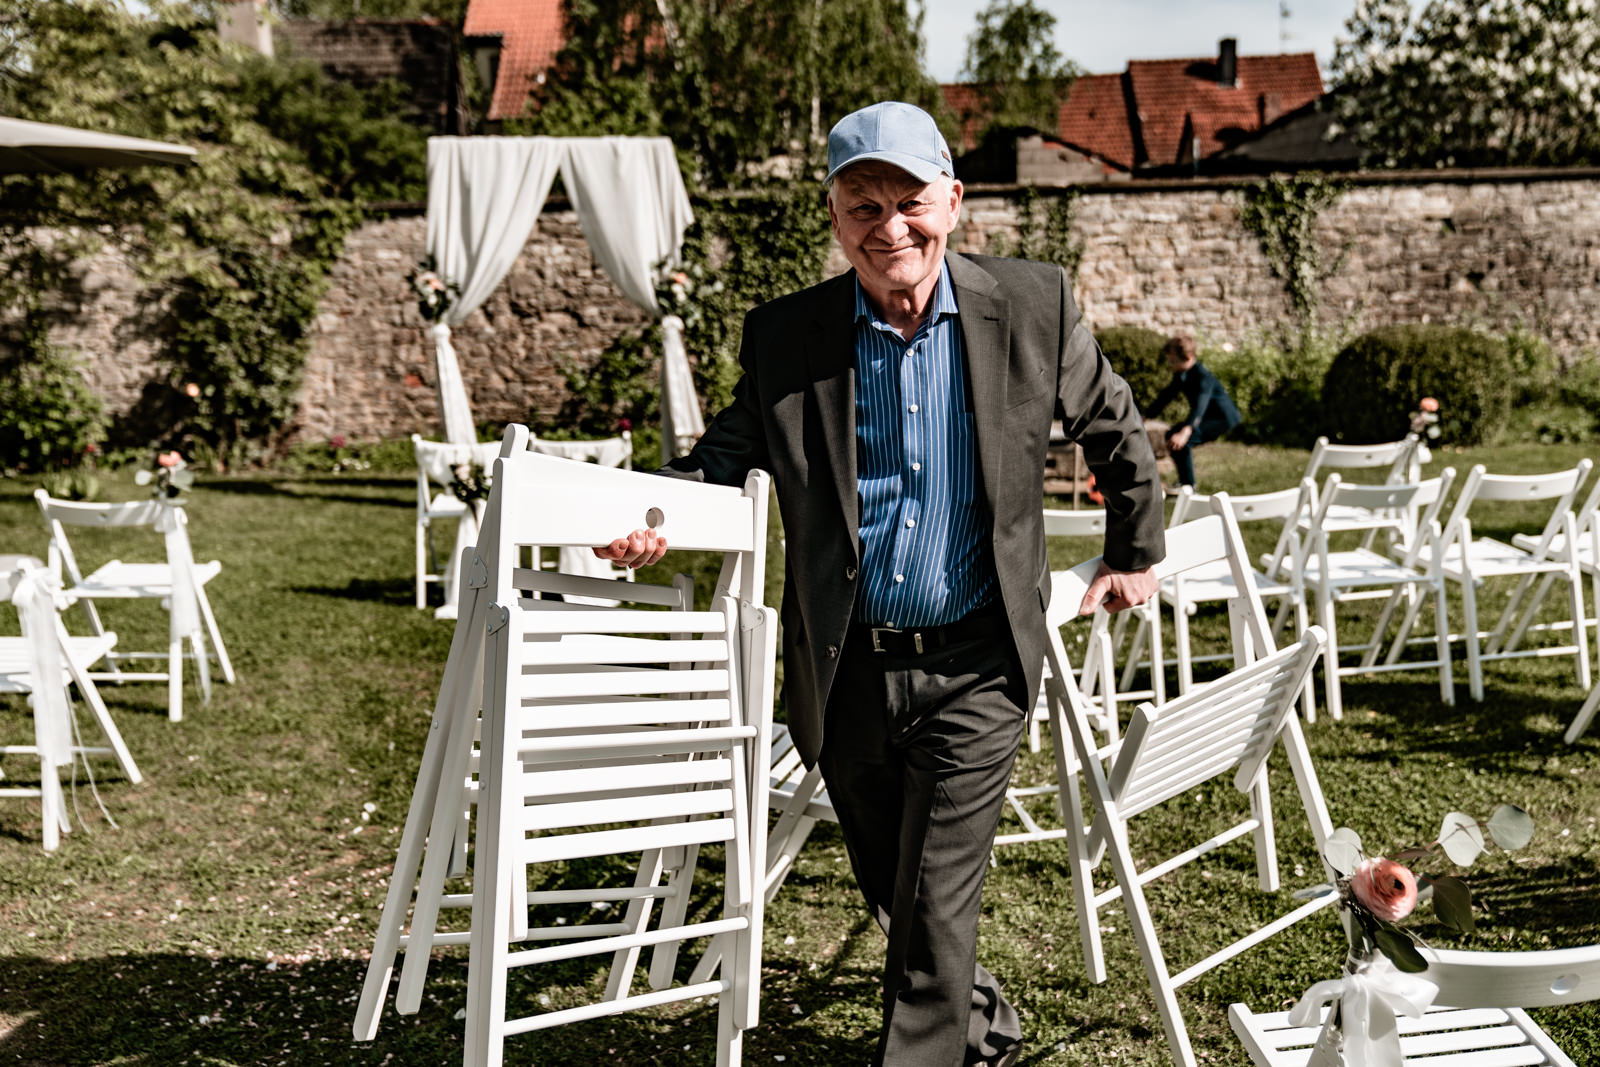 Hochzeit im Freien in der Villa Sommerach bei Würzburg. Hochzeitsbilder vom Hochzeitsfotograf Axel Link